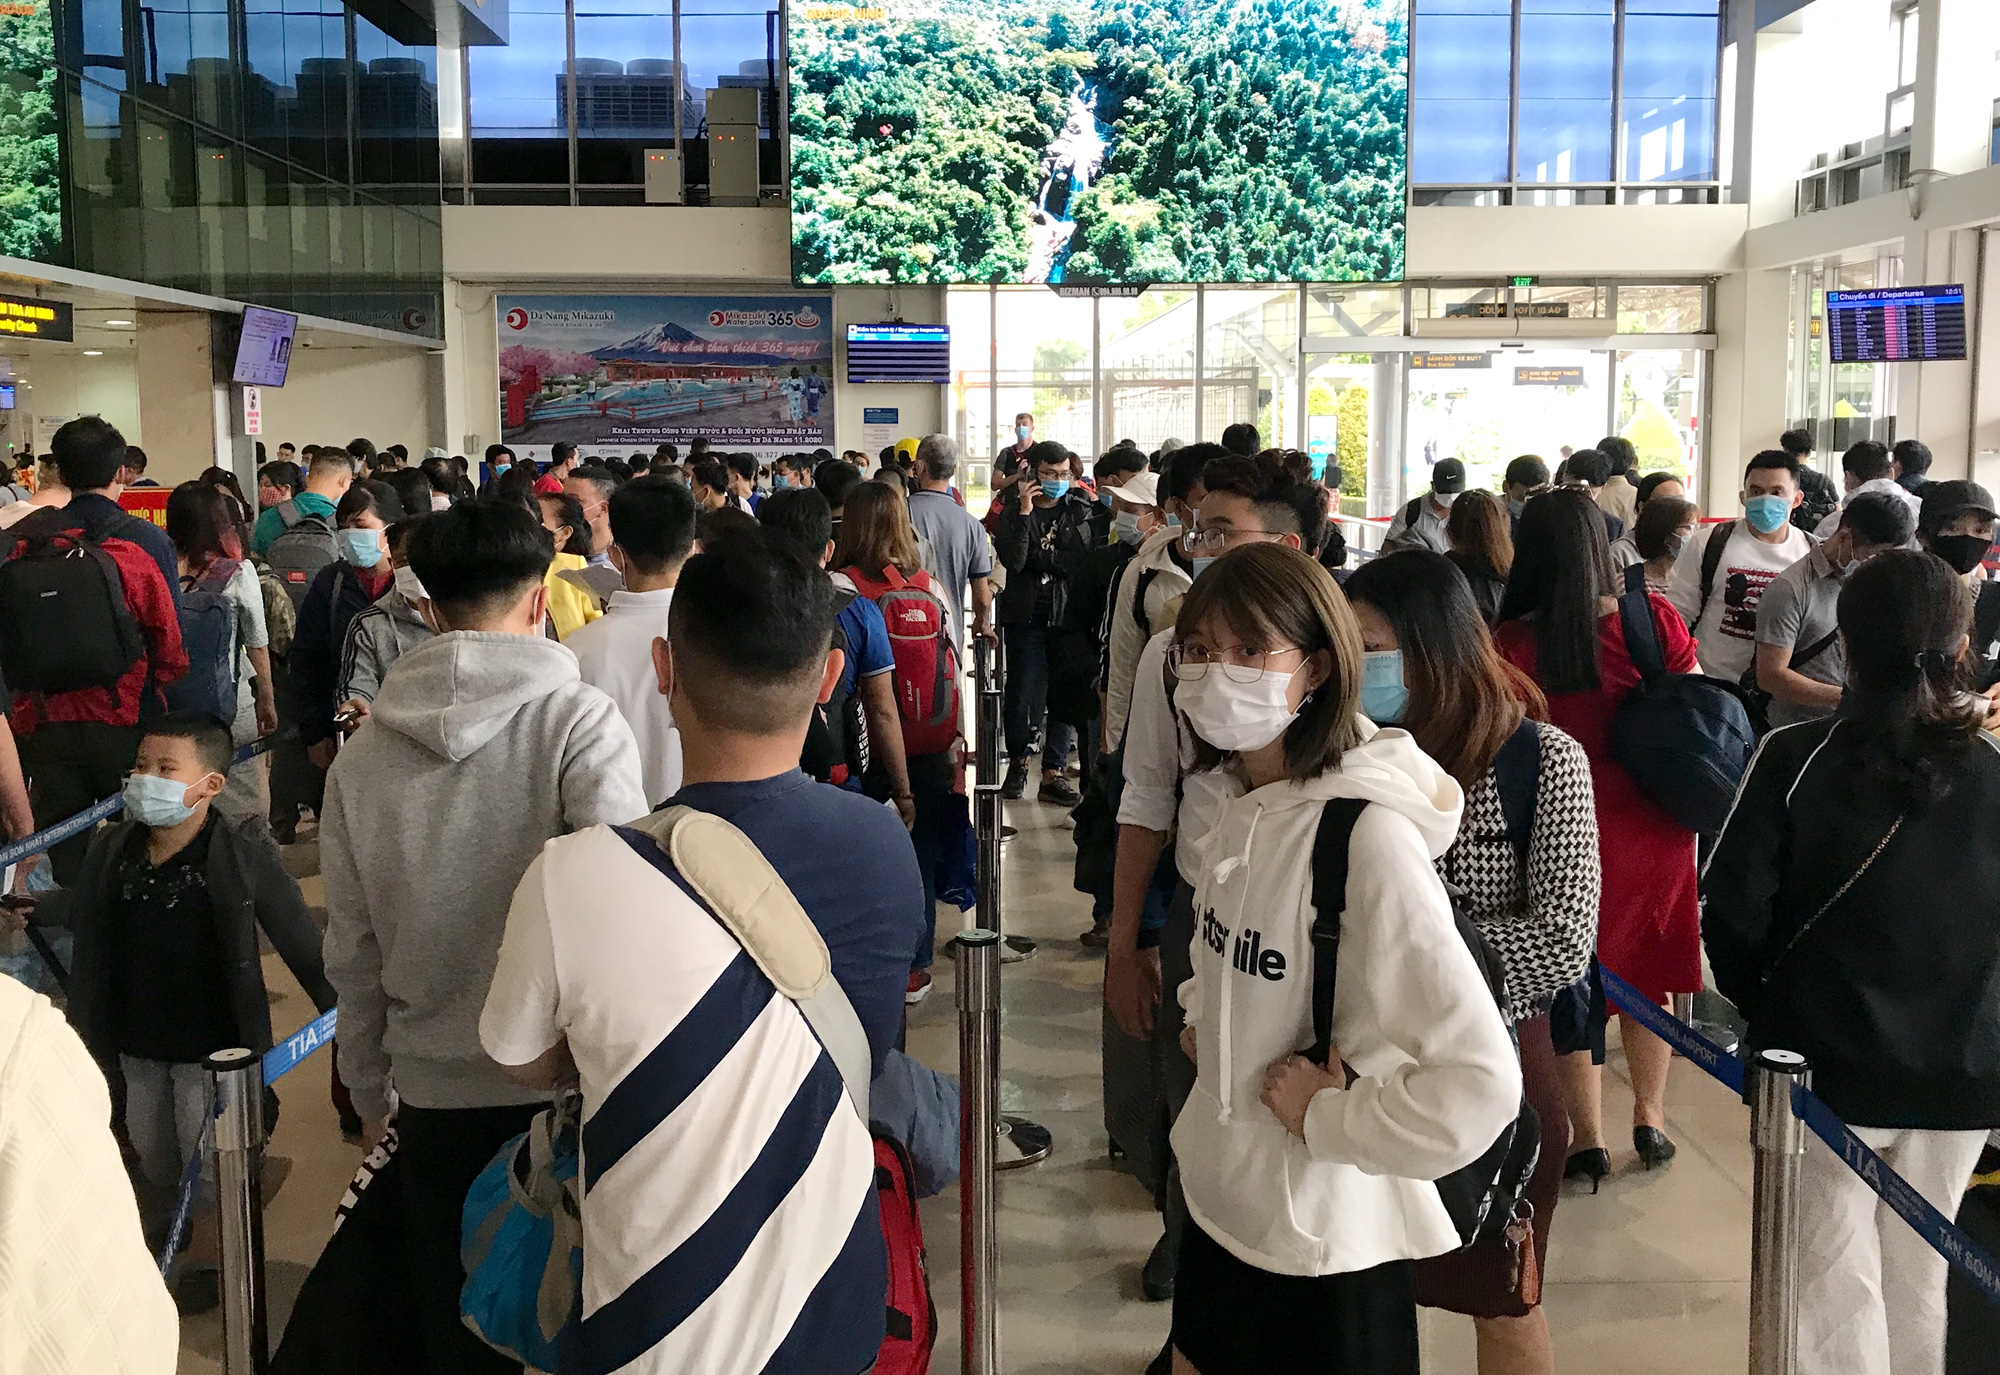 Người dân bắt đầu đổ về quê, sân bay Tân Sơn Nhất đông nghẹt, xếp hàng hơn nửa tiếng chờ check-in - Ảnh 6.